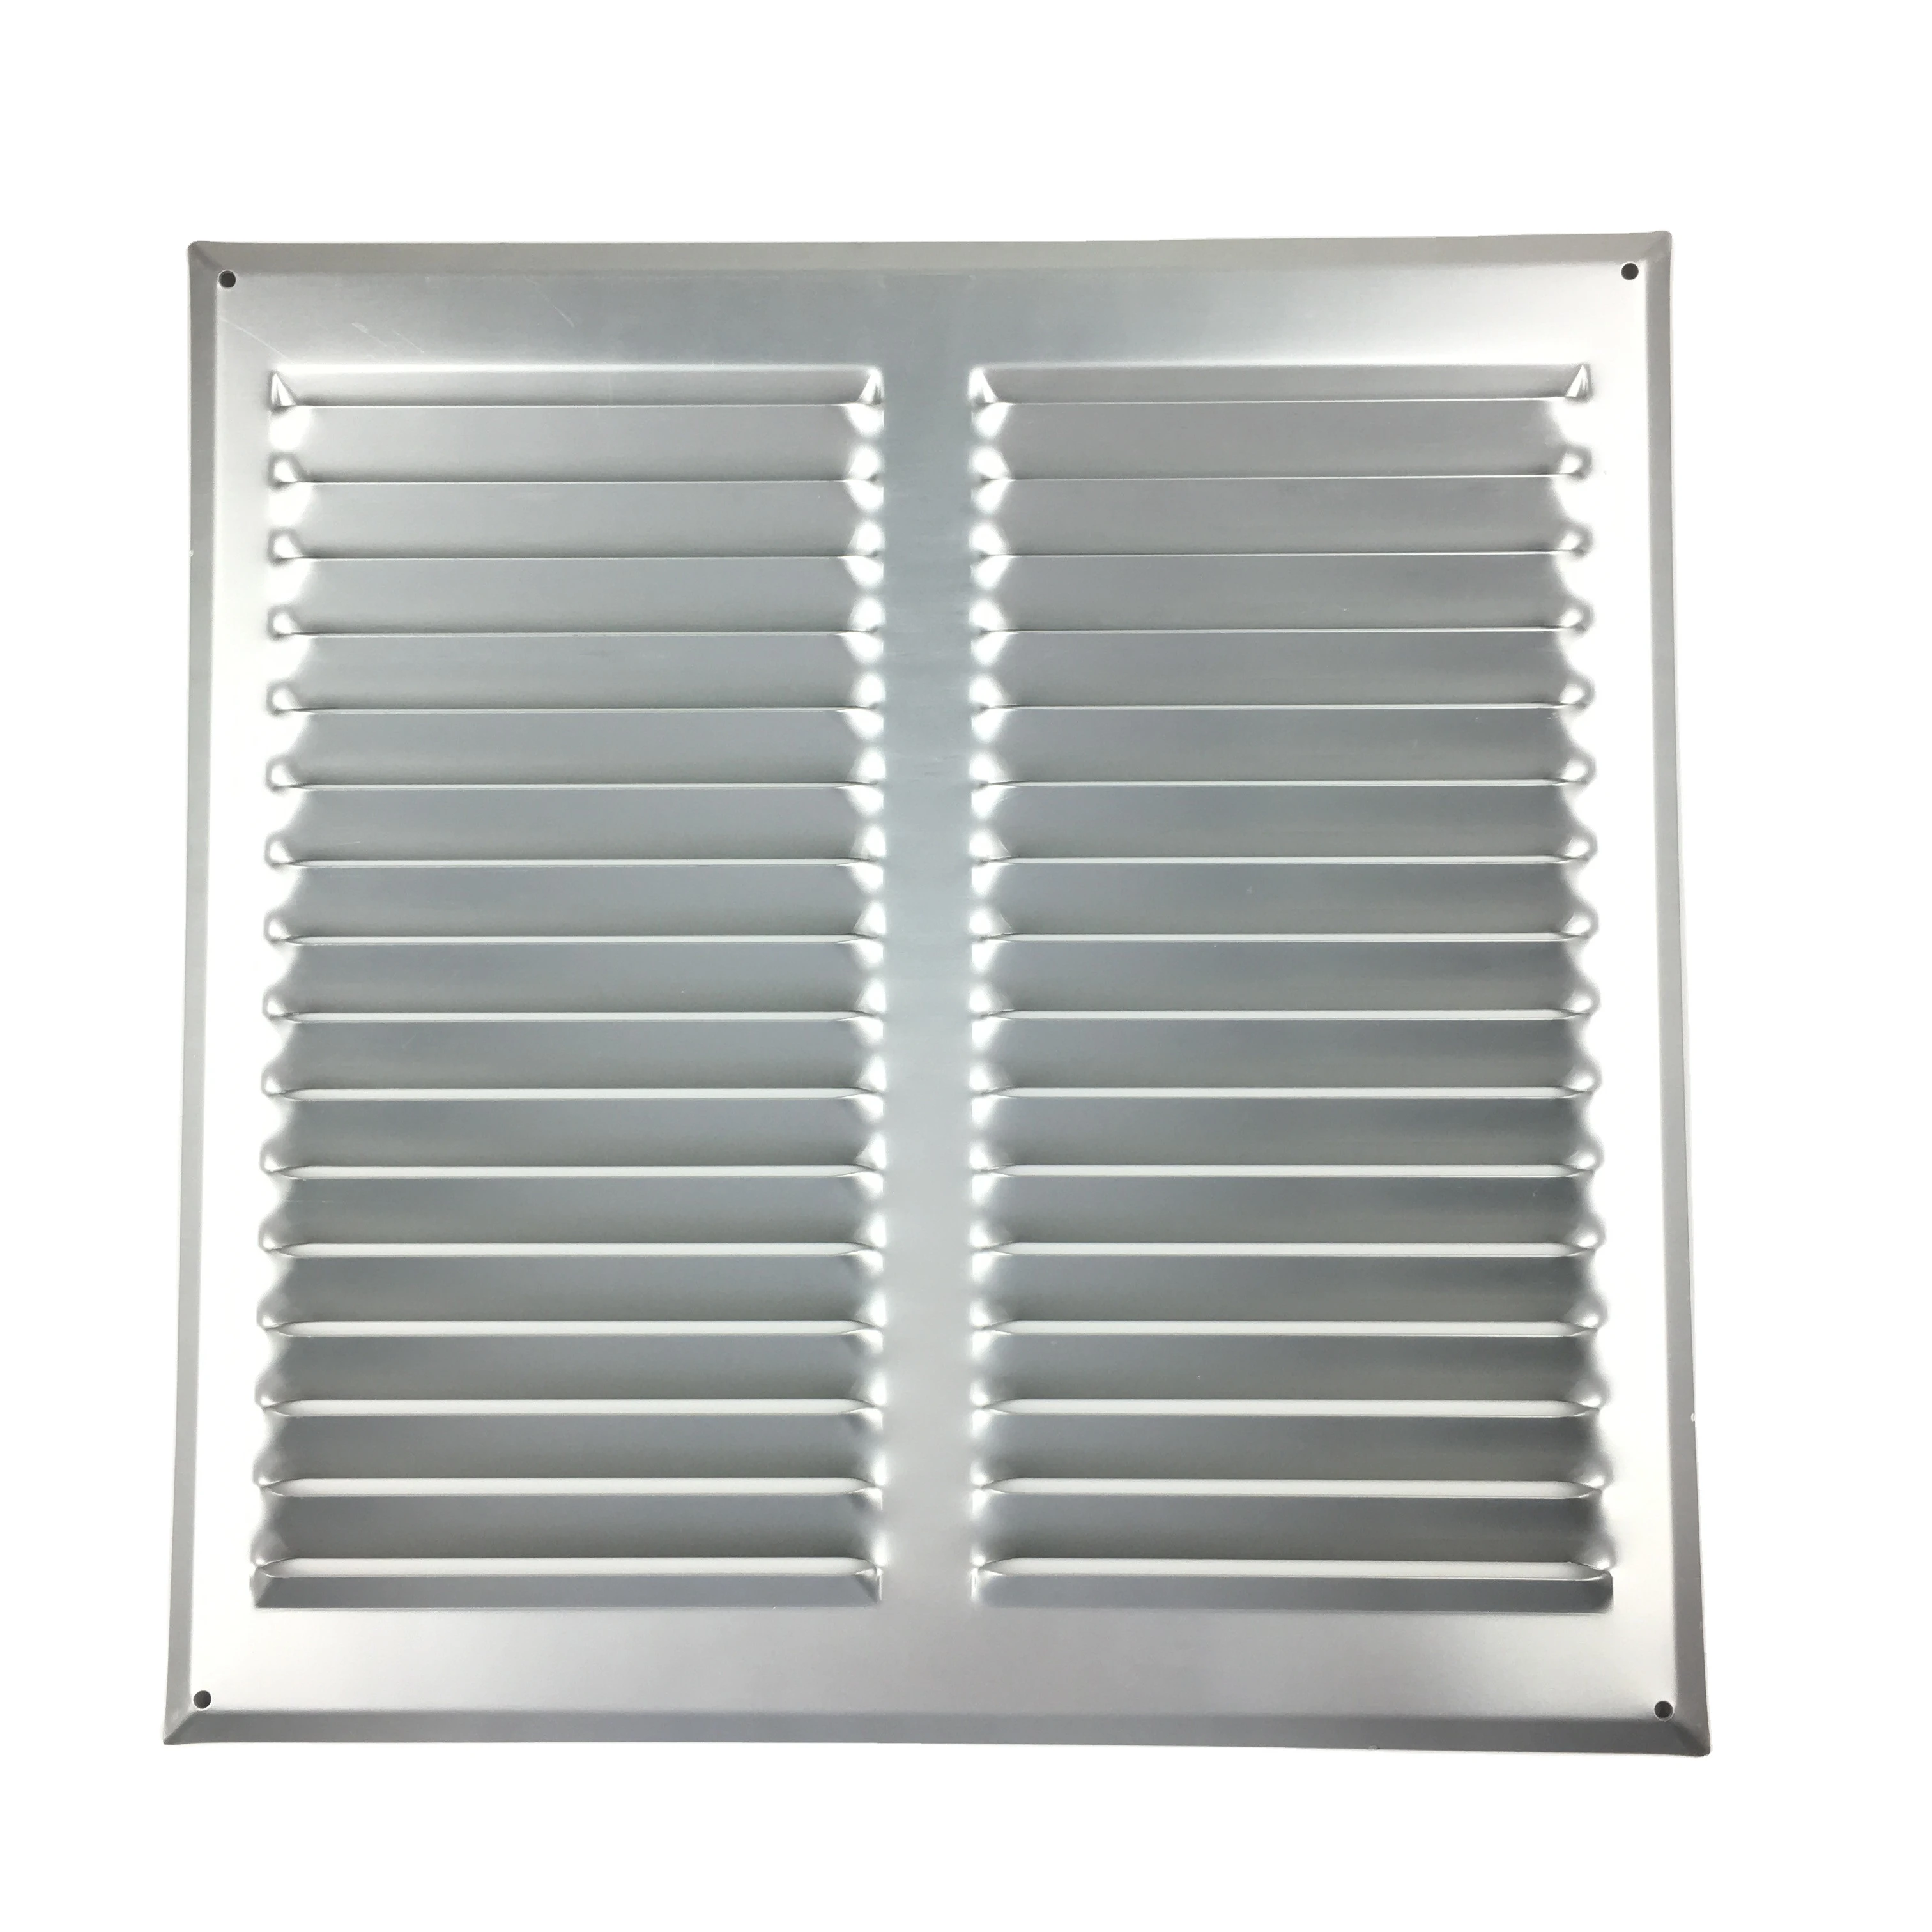 HVAC system ventilation air conditioning aluminum conditioner round duct vent